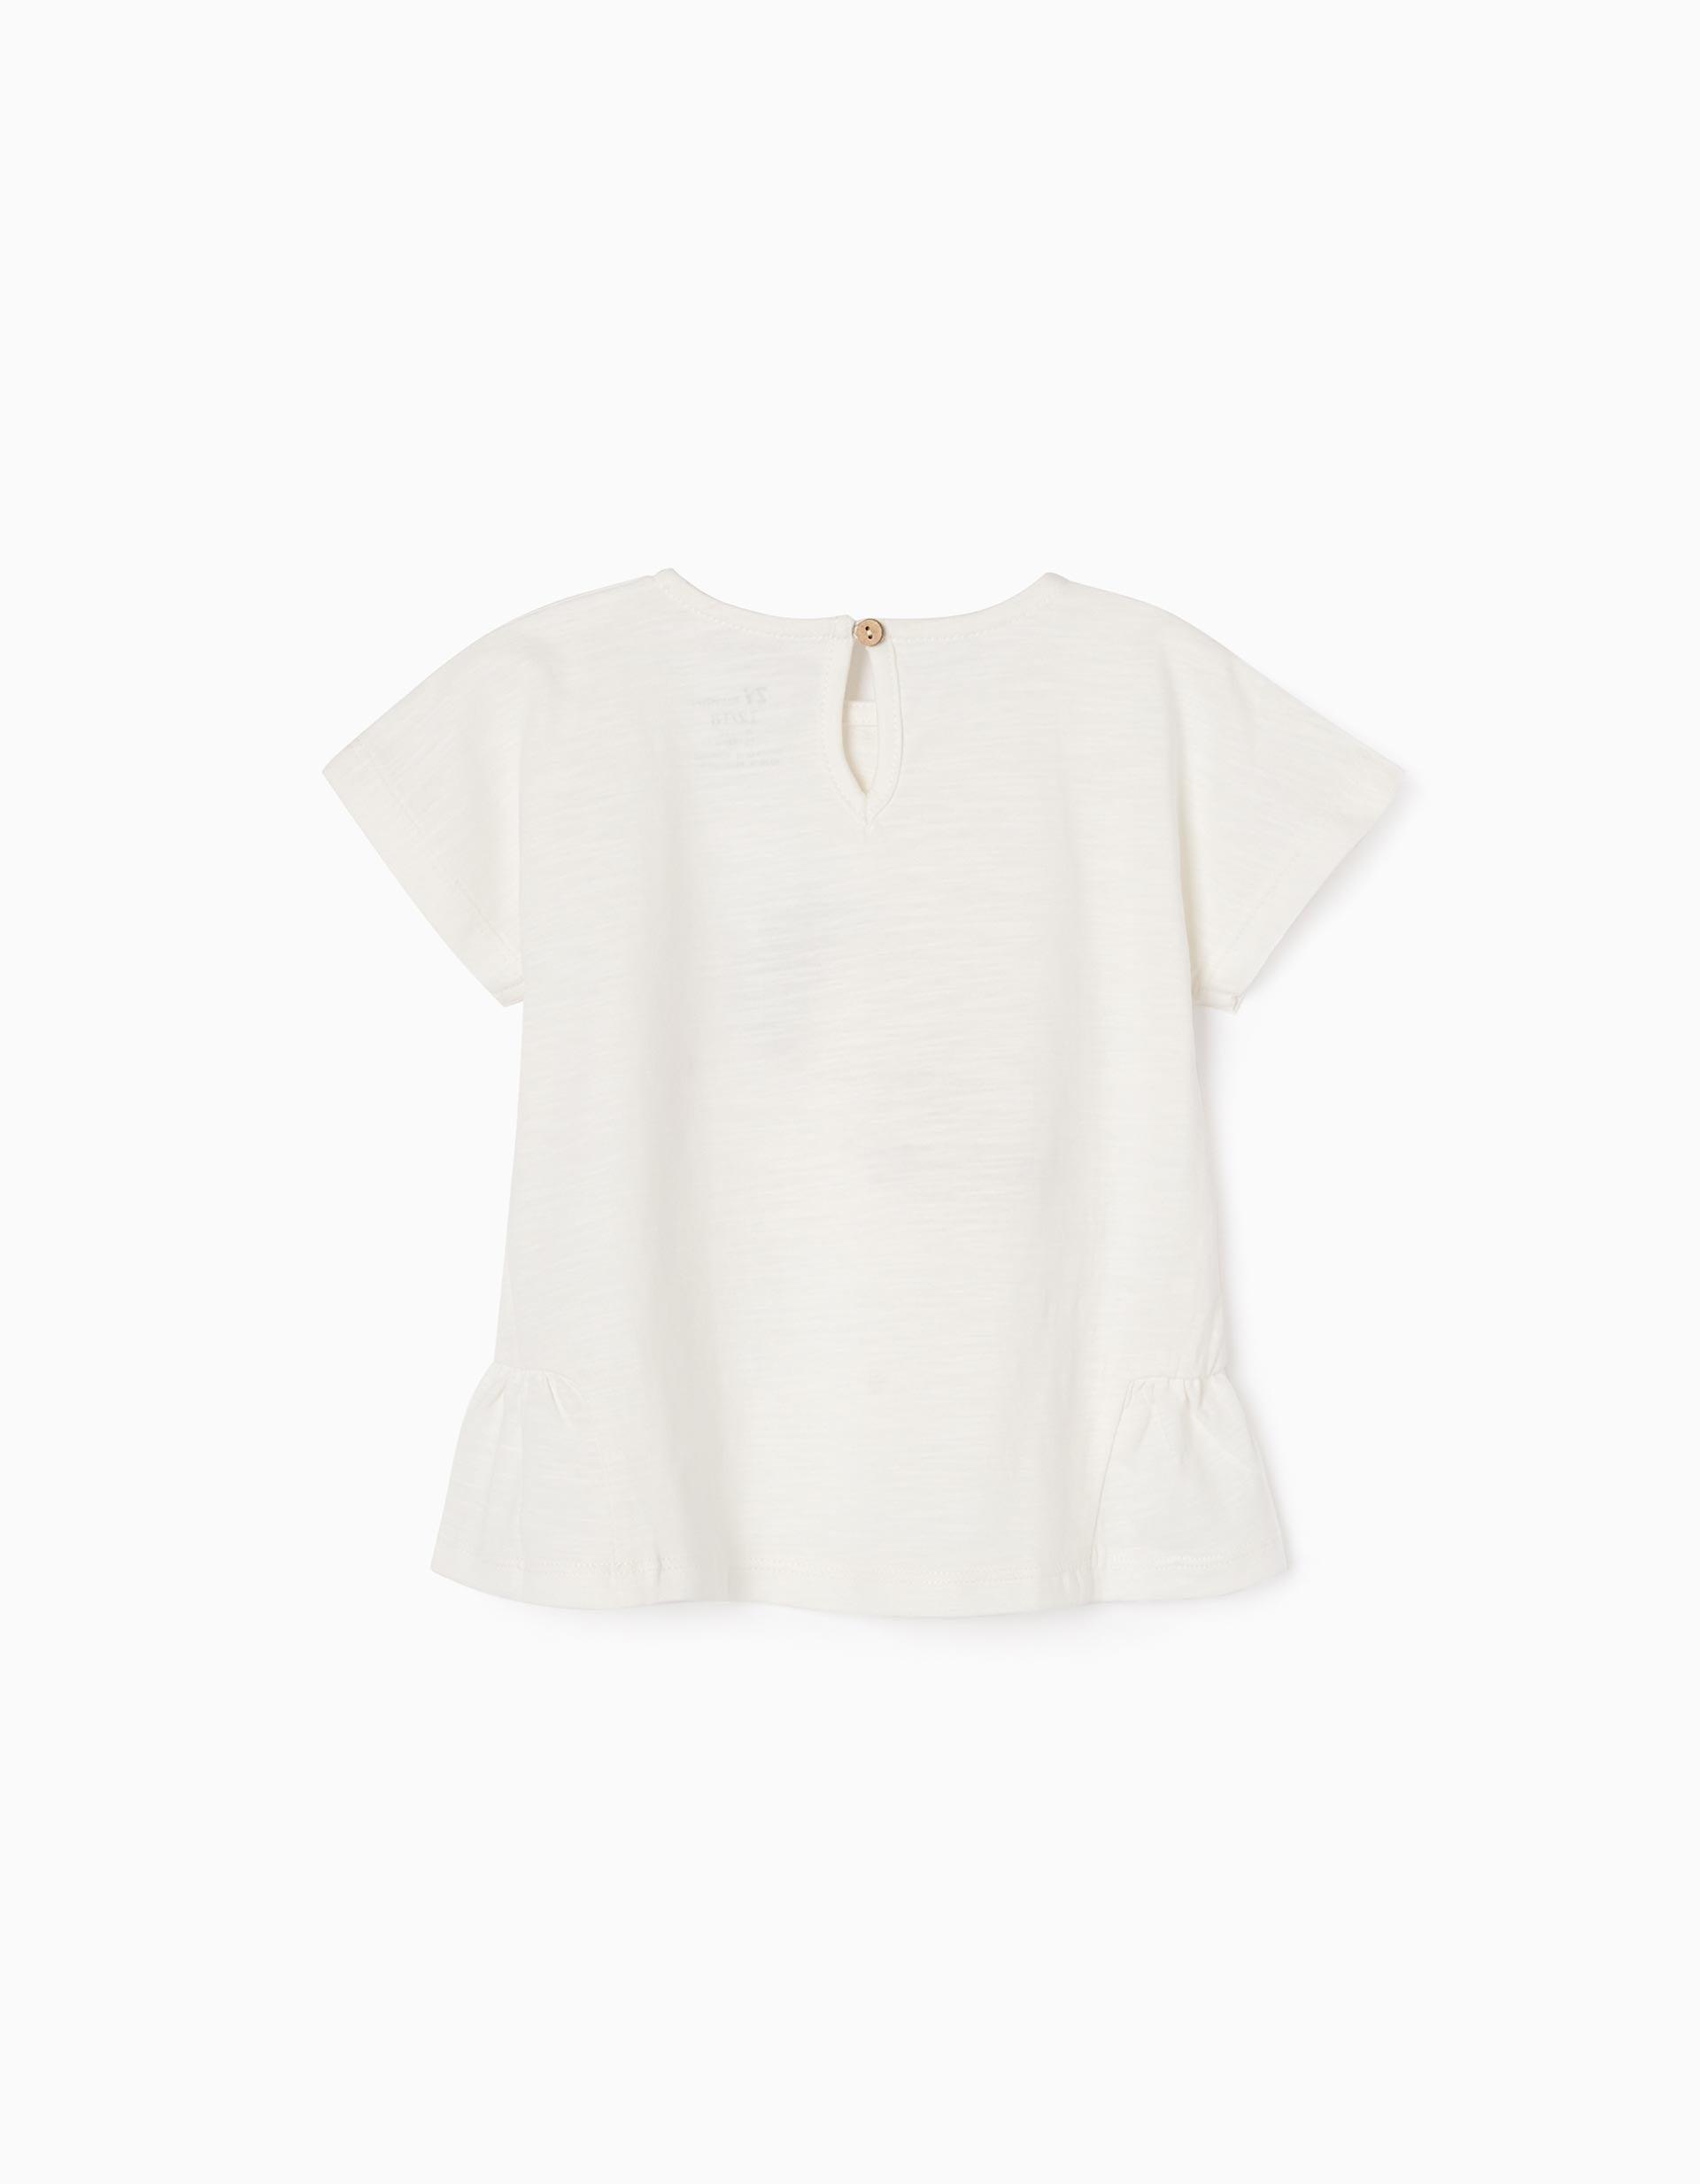 Gant - White Ruffled Sleeve T-Shirt, Baby Girls